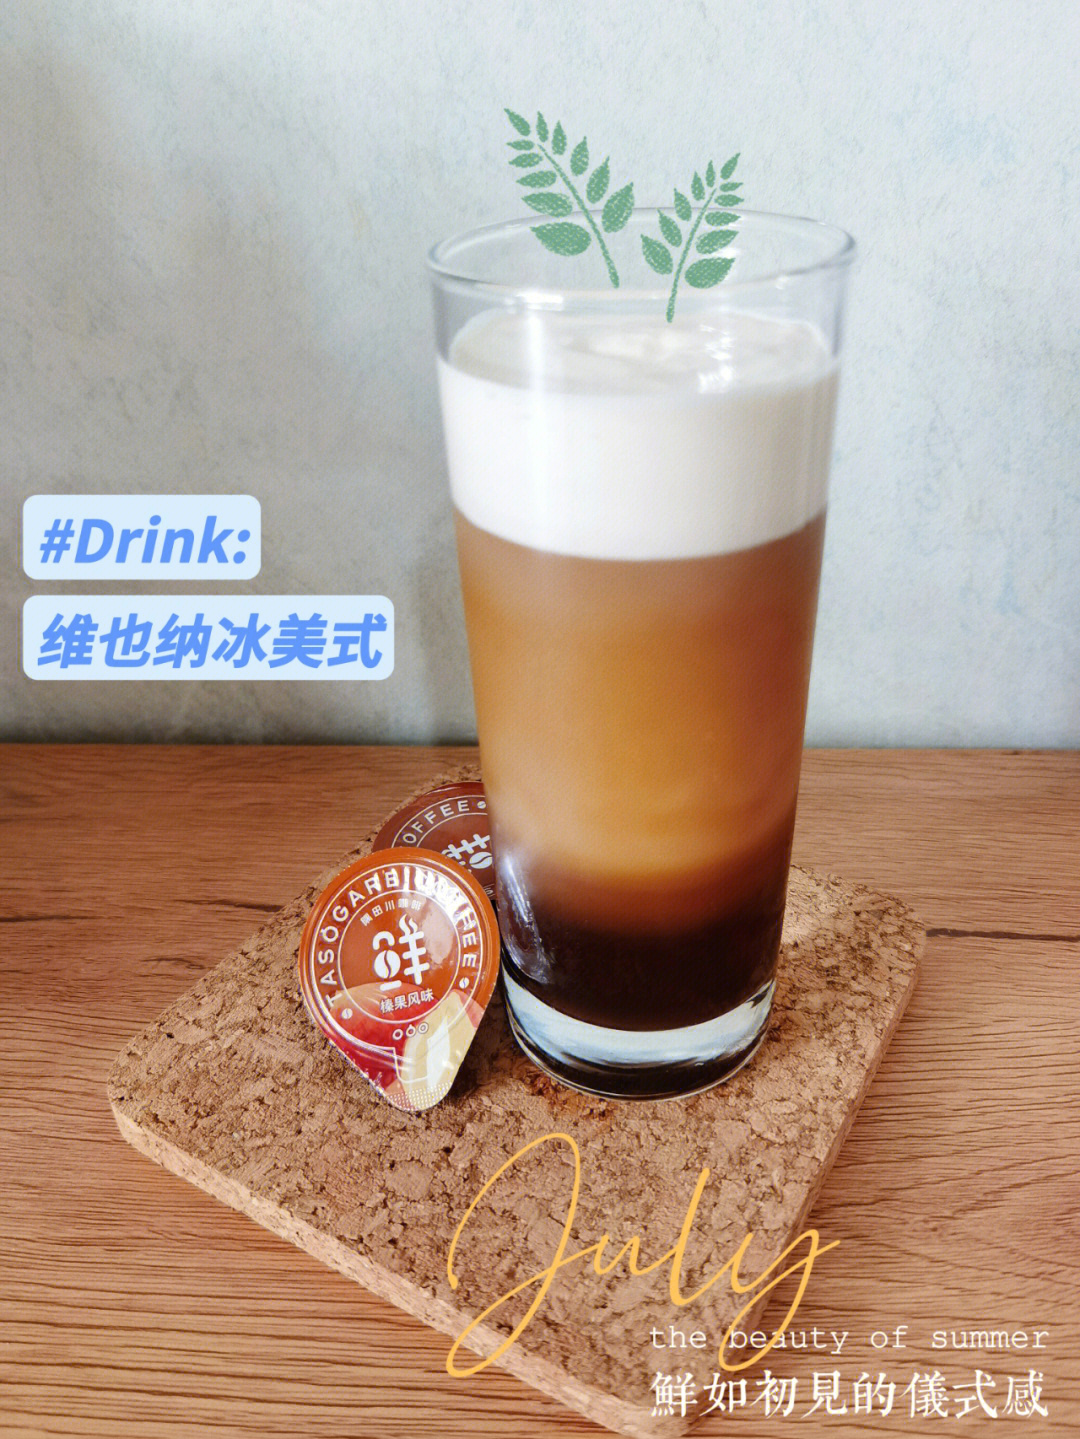 肖战代言隅田川咖啡一杯维也纳冰美式,帮你散去夏日炎热